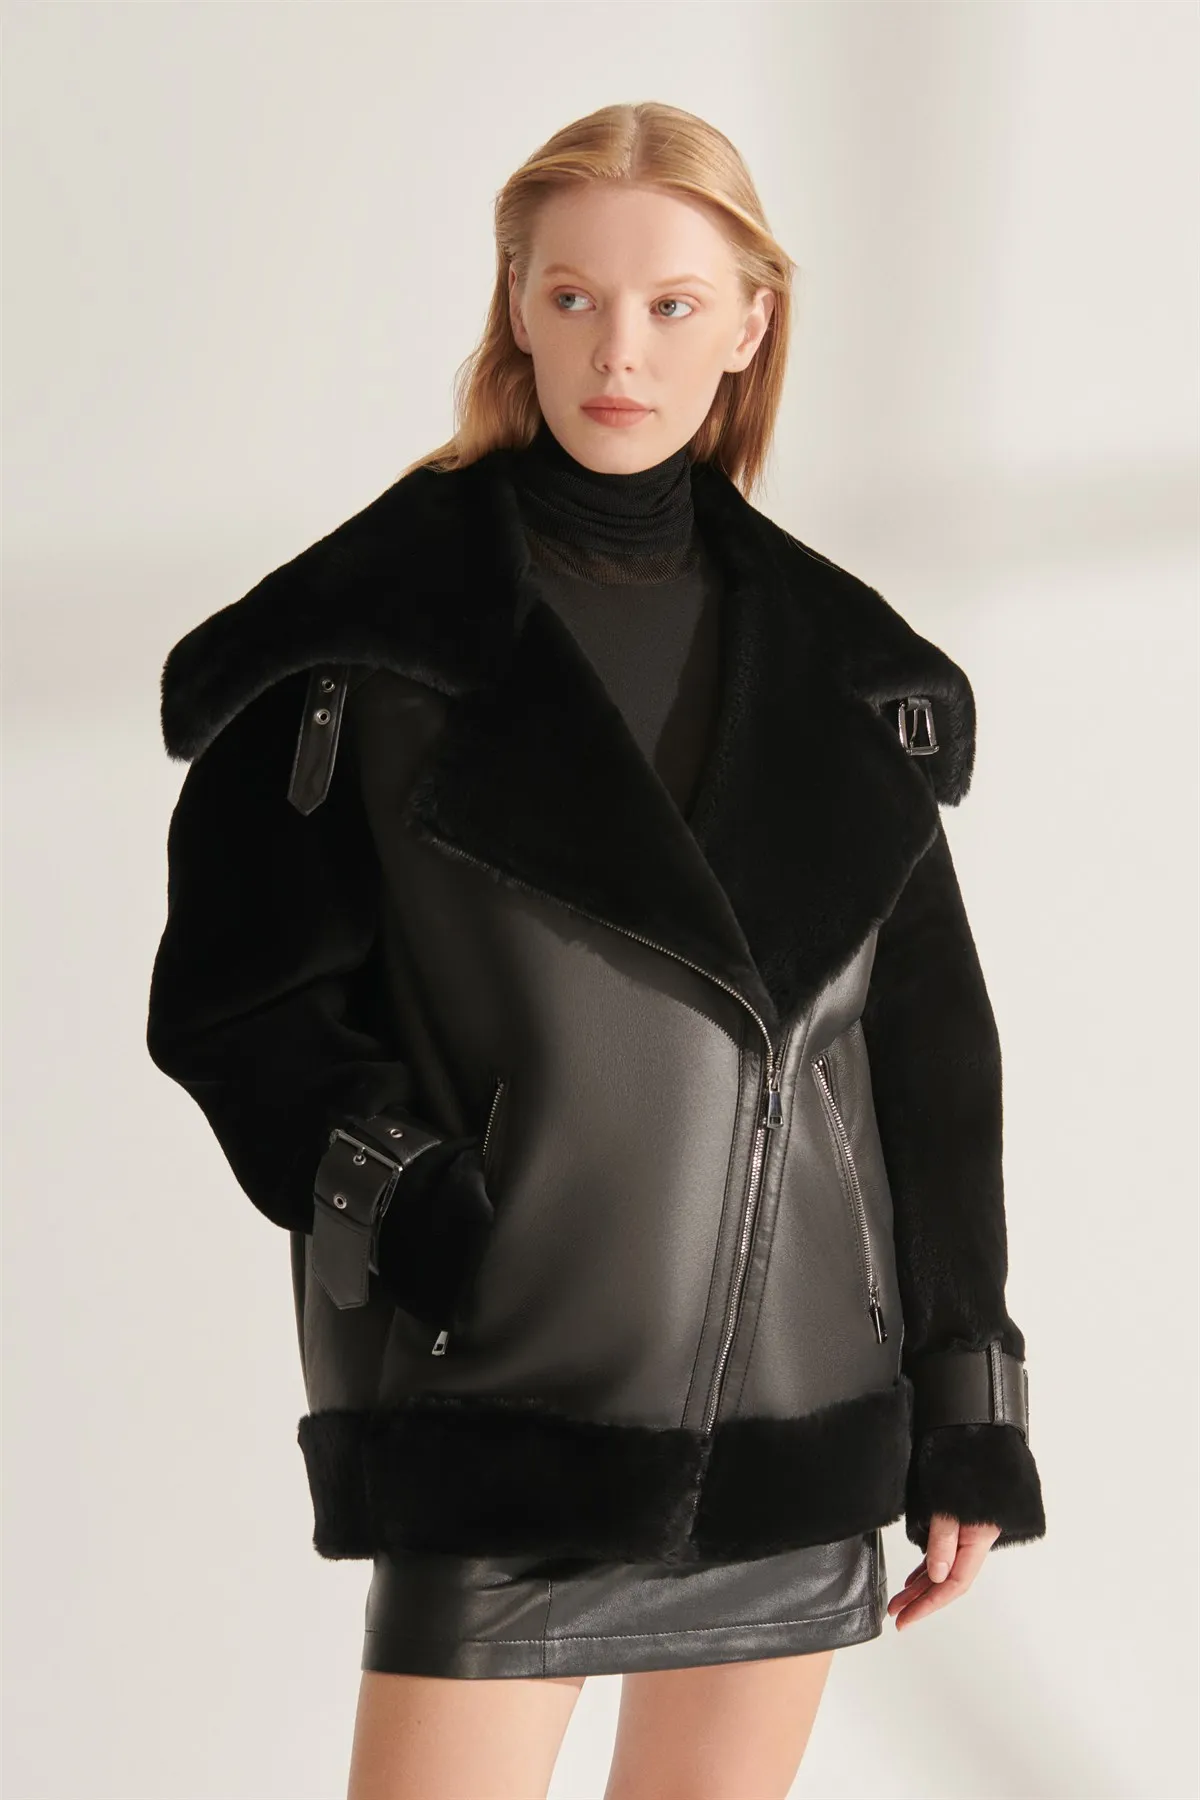 Genuine Leather Jackets Black Real Fur Coat Oversize Coats Women Winter Wear Warm Waterproof Parkas Design New Street Fashion